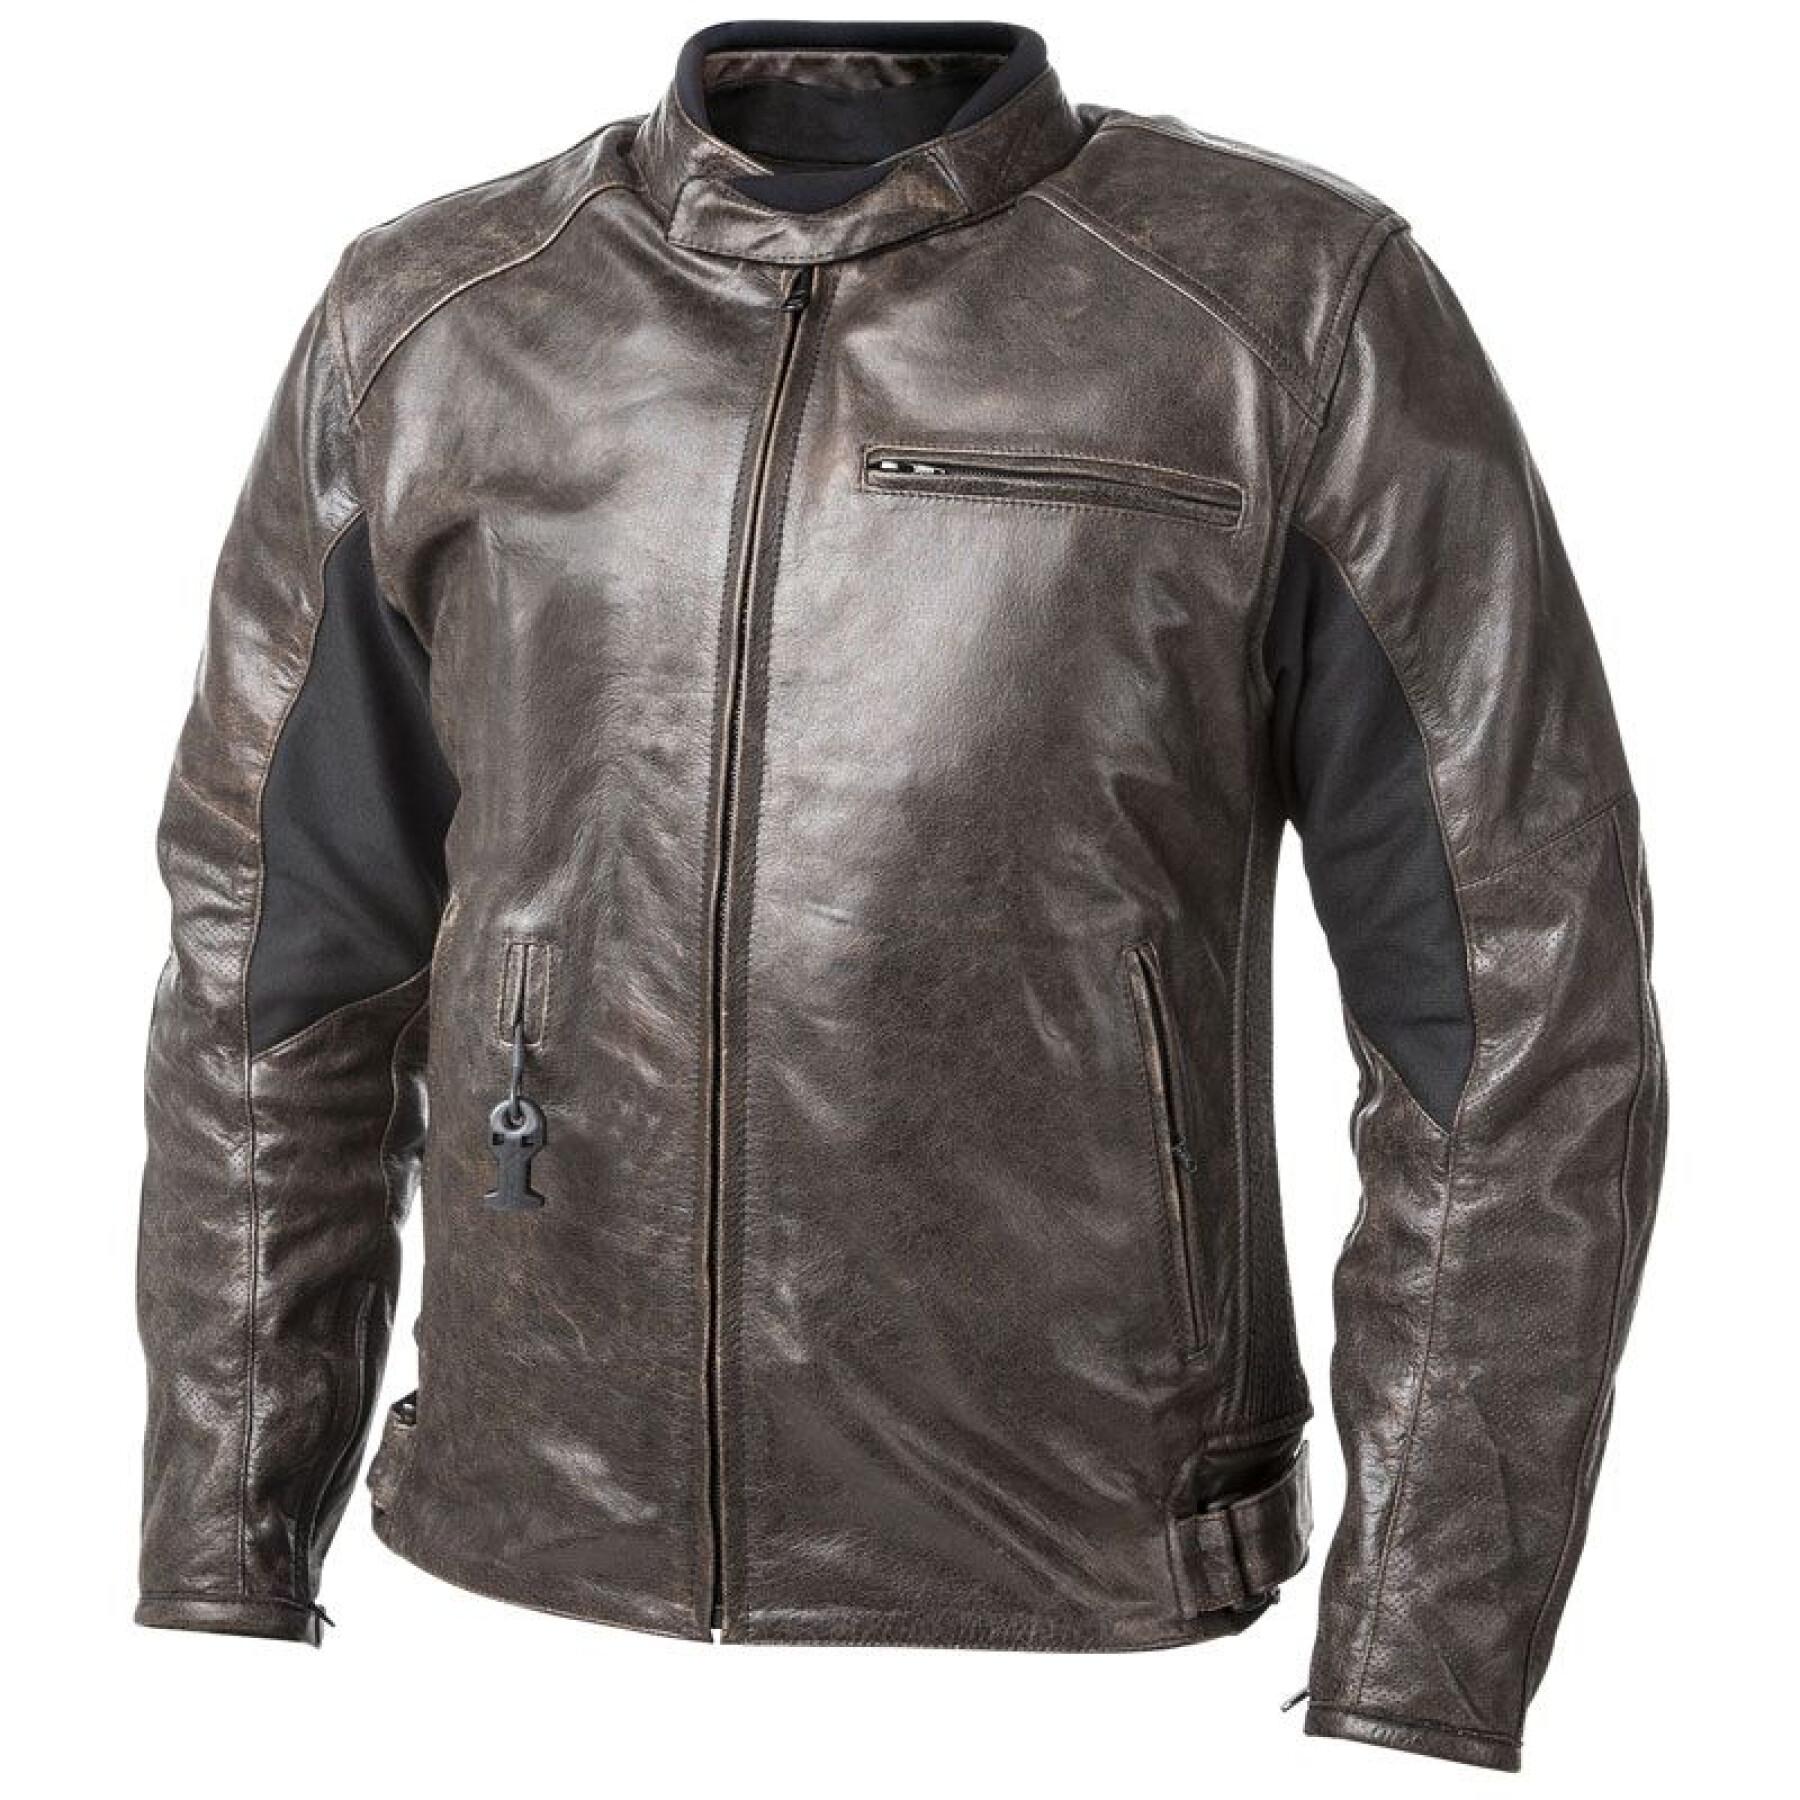 Leather jacket Helite AIRBAG ROADSTER 2 - Airbag vests - Jackets - Men